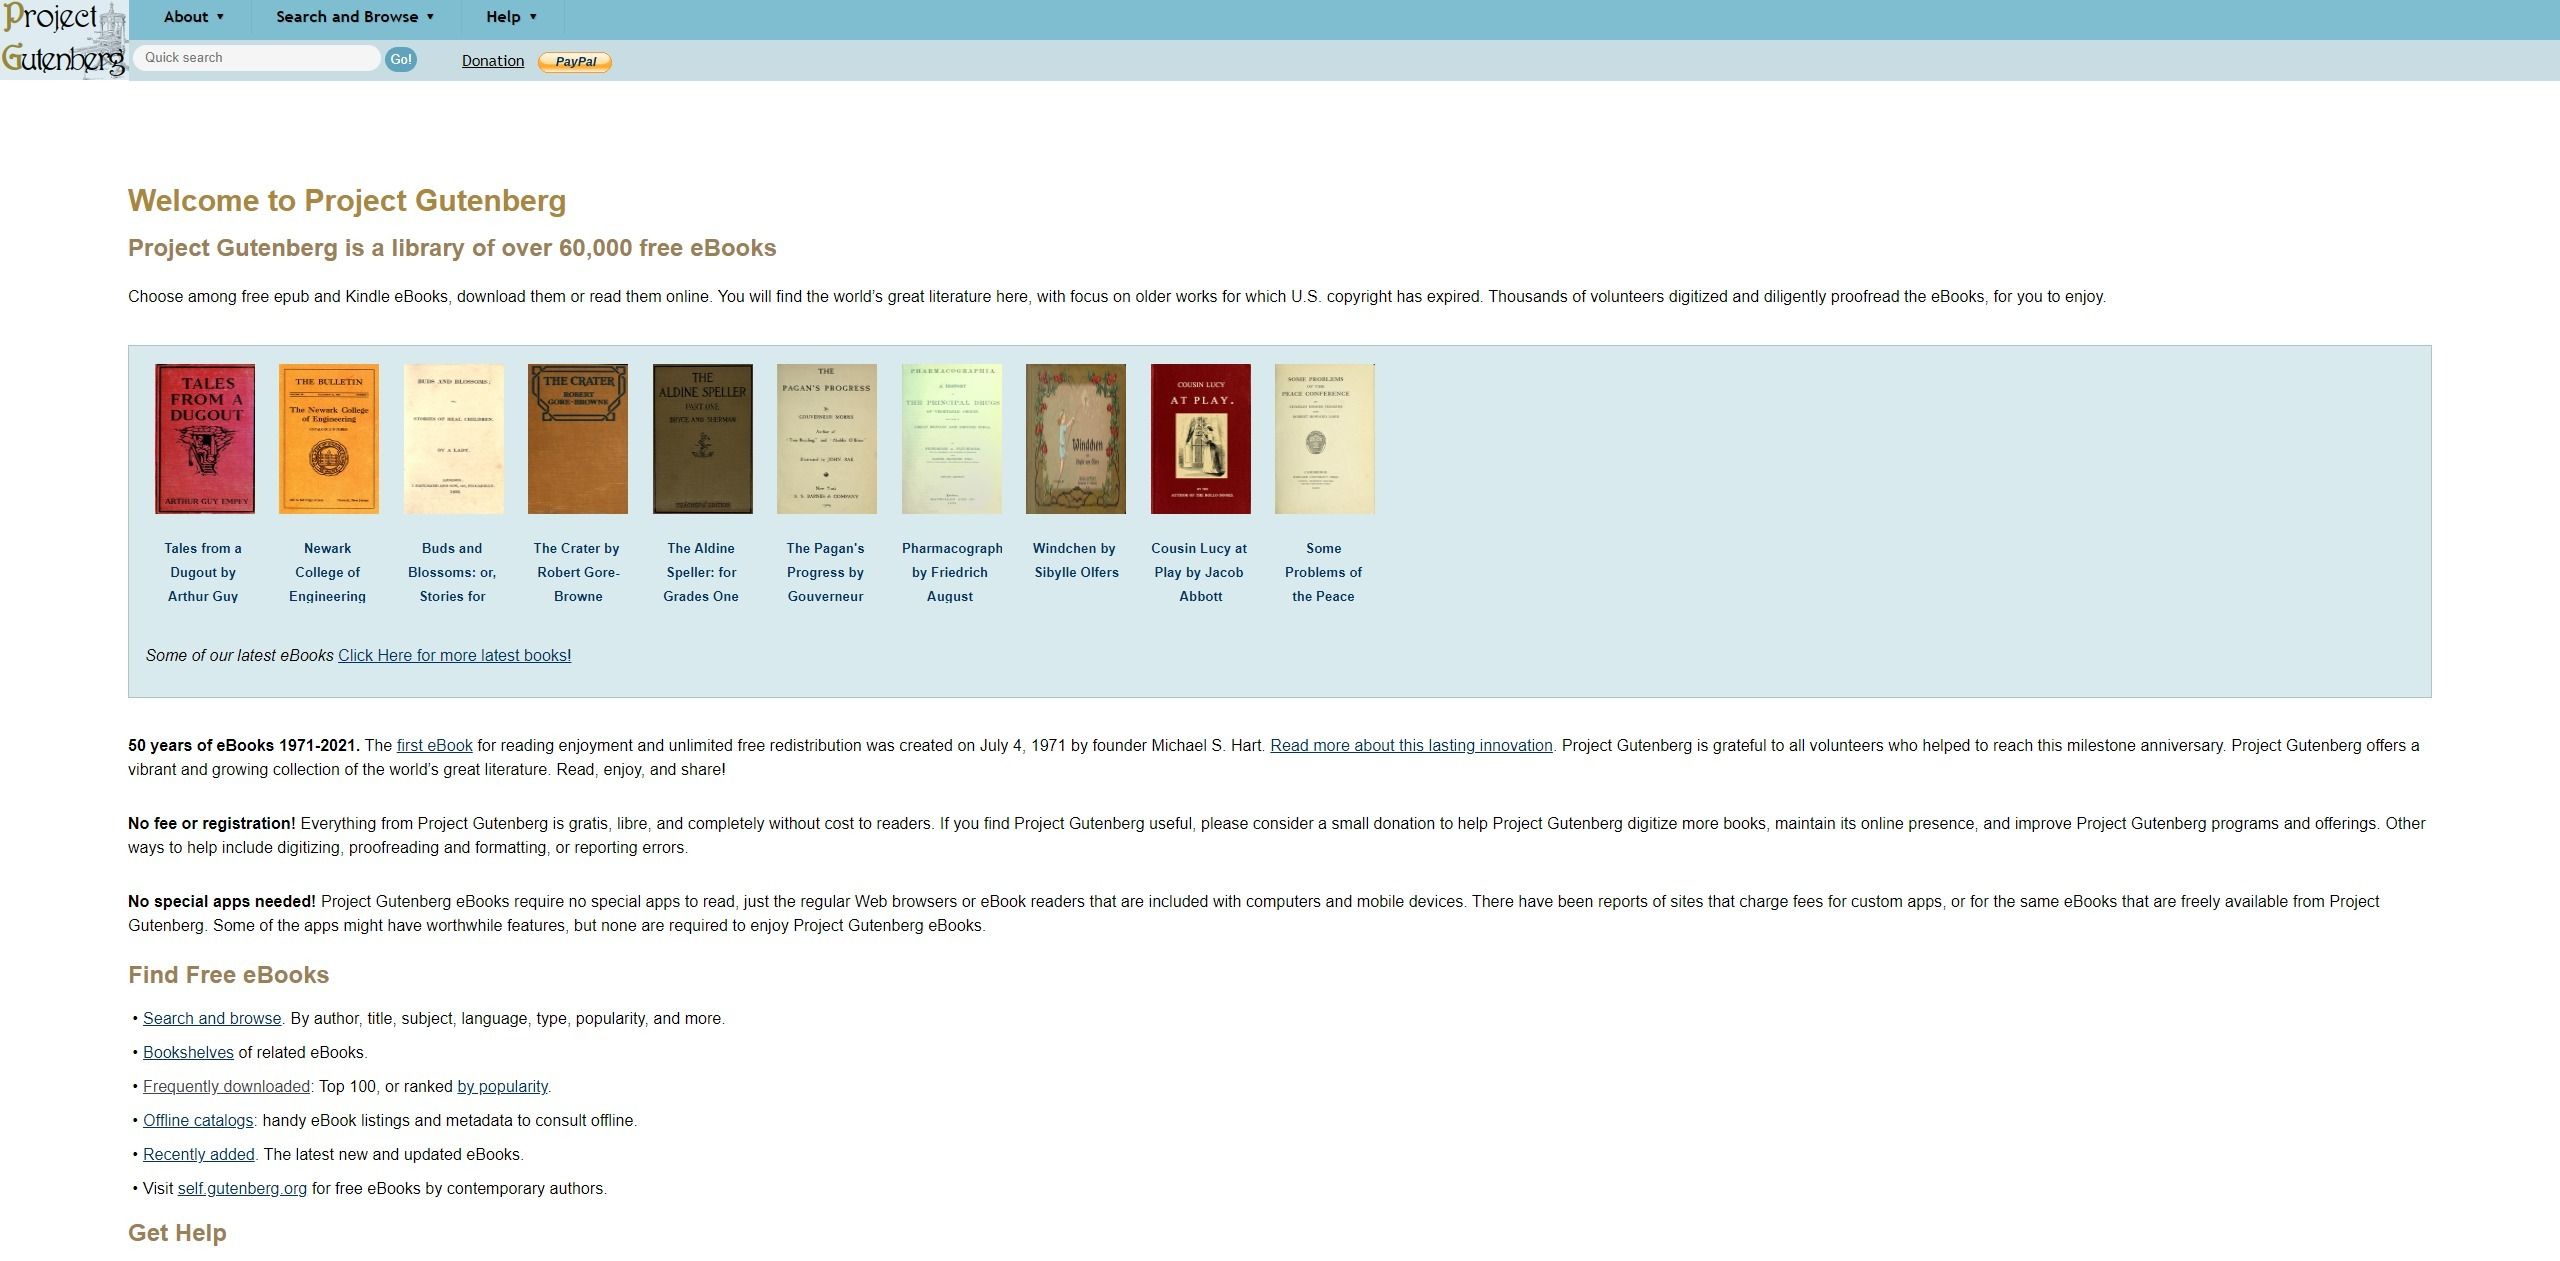 Screenshot showing the project gutenberg website